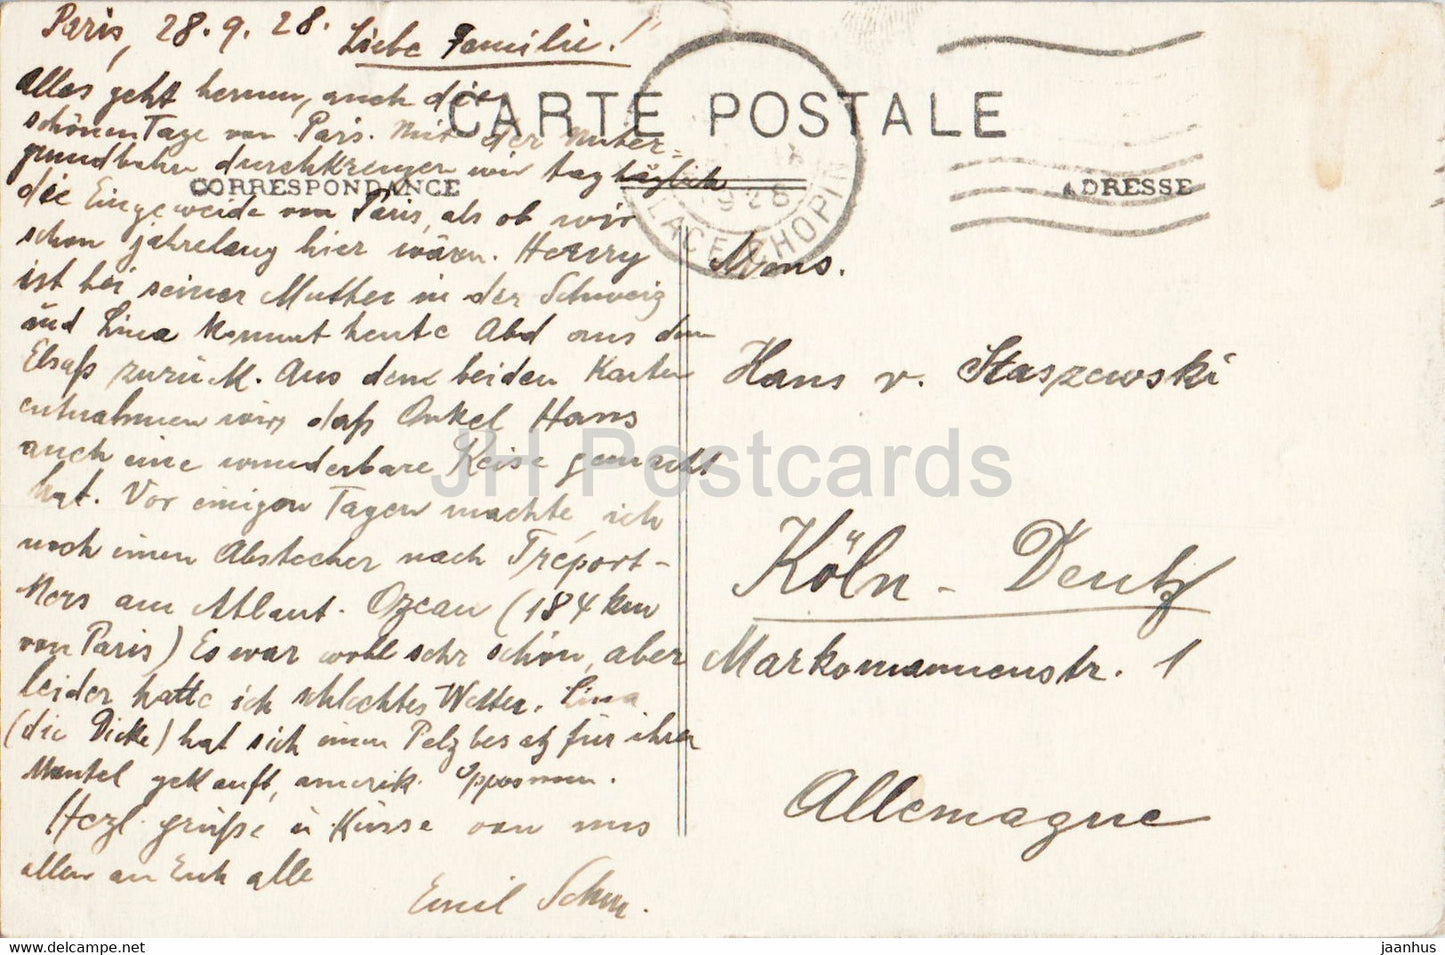 Paris - L'Arc de Triomphe - La Foule devant le Tombeau du Soldat Français - 129 - carte postale ancienne - 1928 - France - utilisé